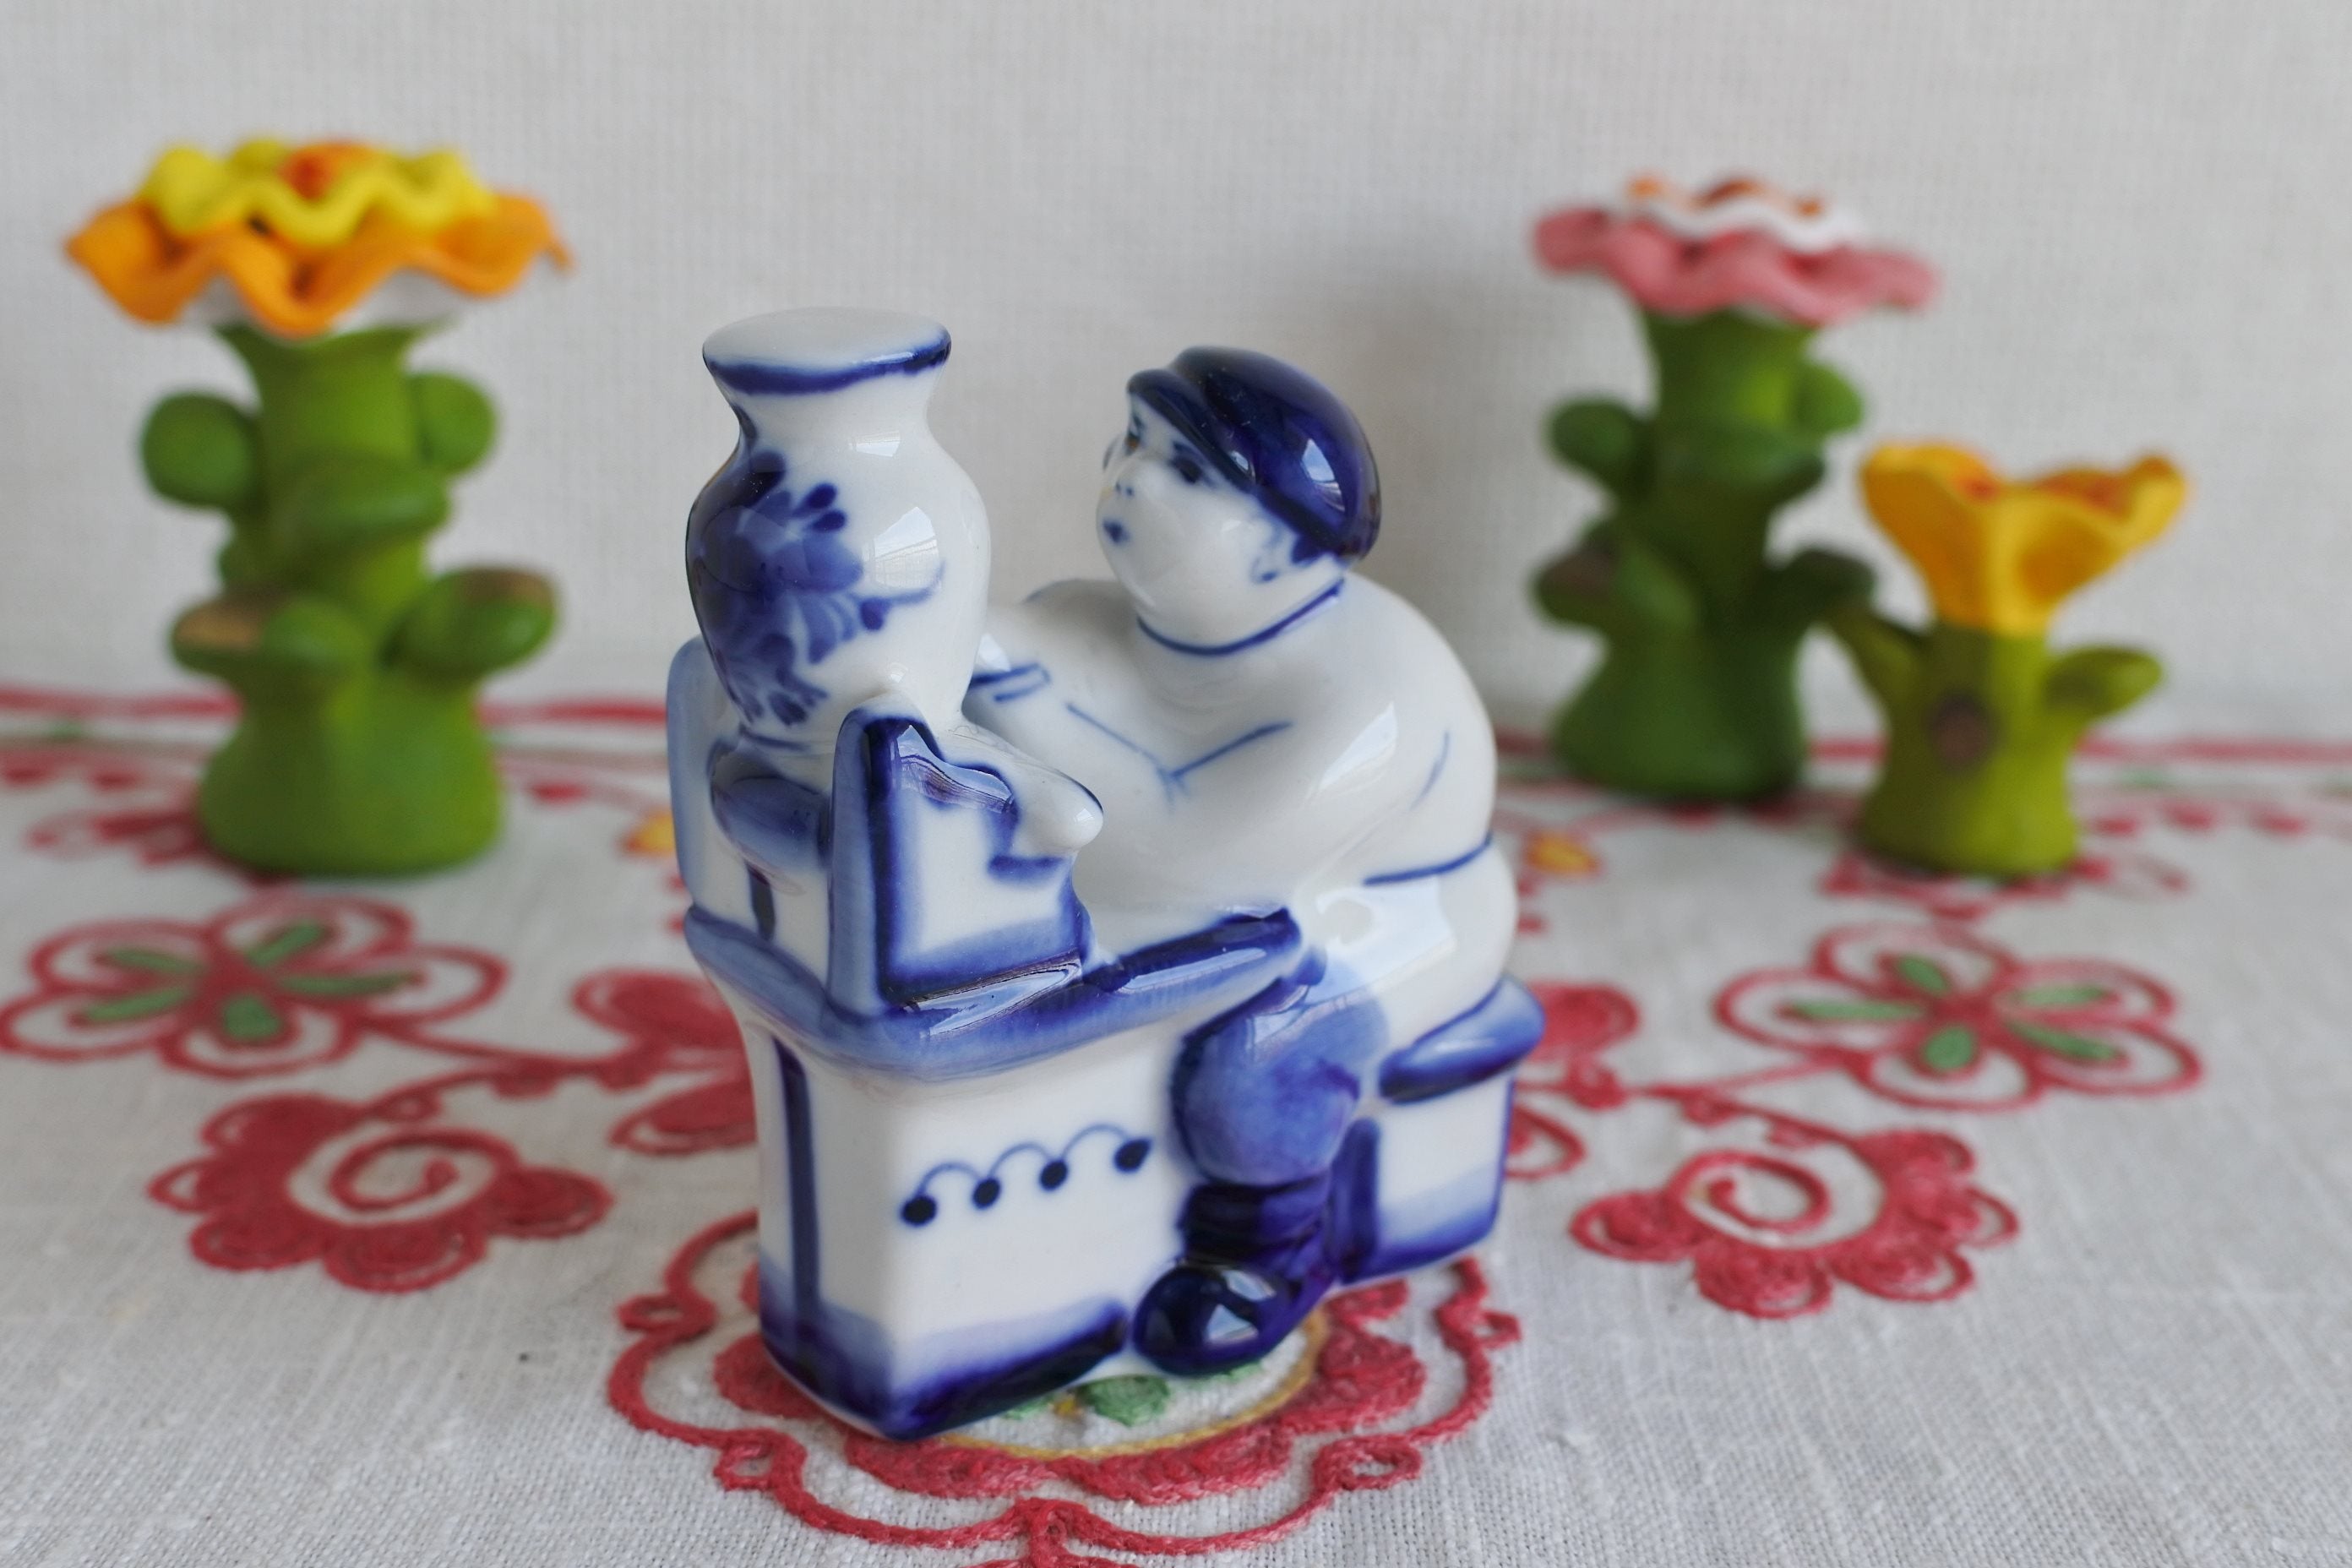 グジェリ陶器 グジェリ職人 ロシアの陶器 フィギア 陶器人形 ロシア